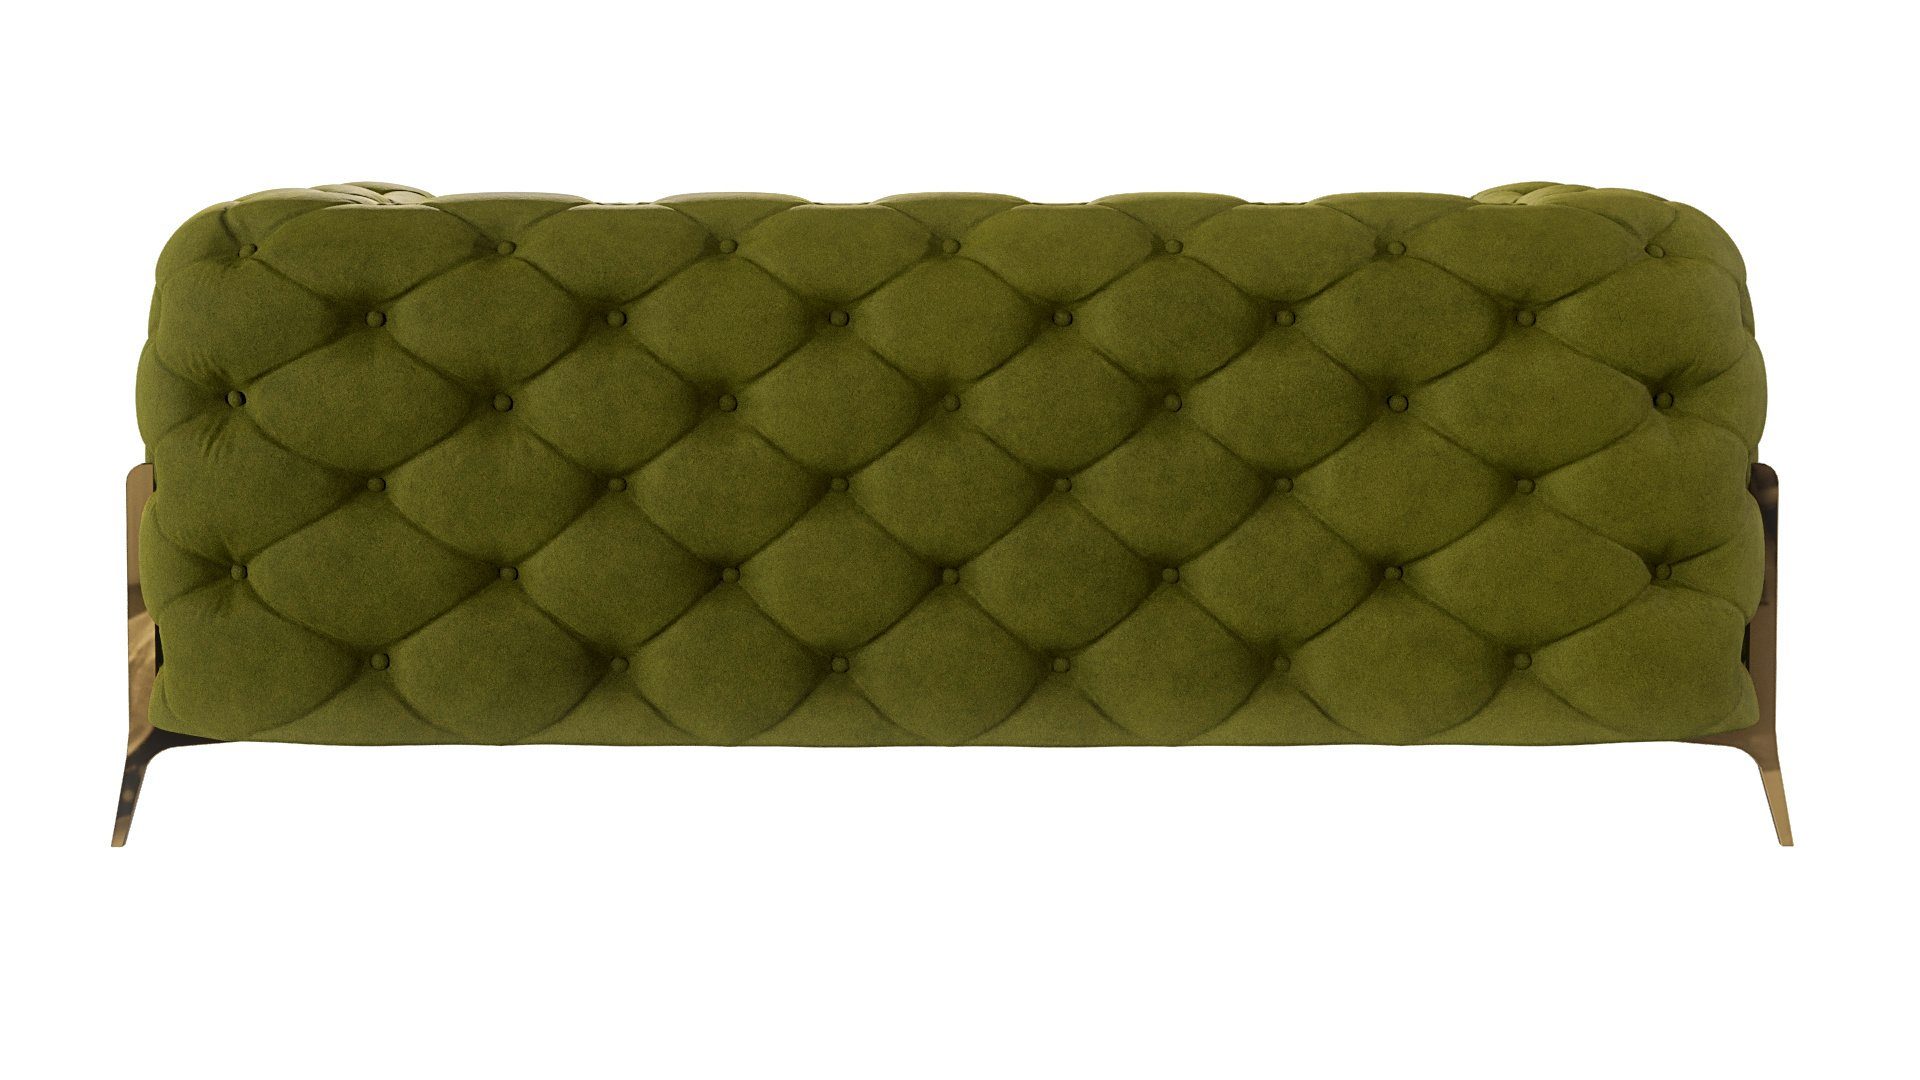 Metall Olive Wellenfederung S-Style mit Möbel Chesterfield Goldene Sofa Füßen, mit 2-Sitzer Ashley